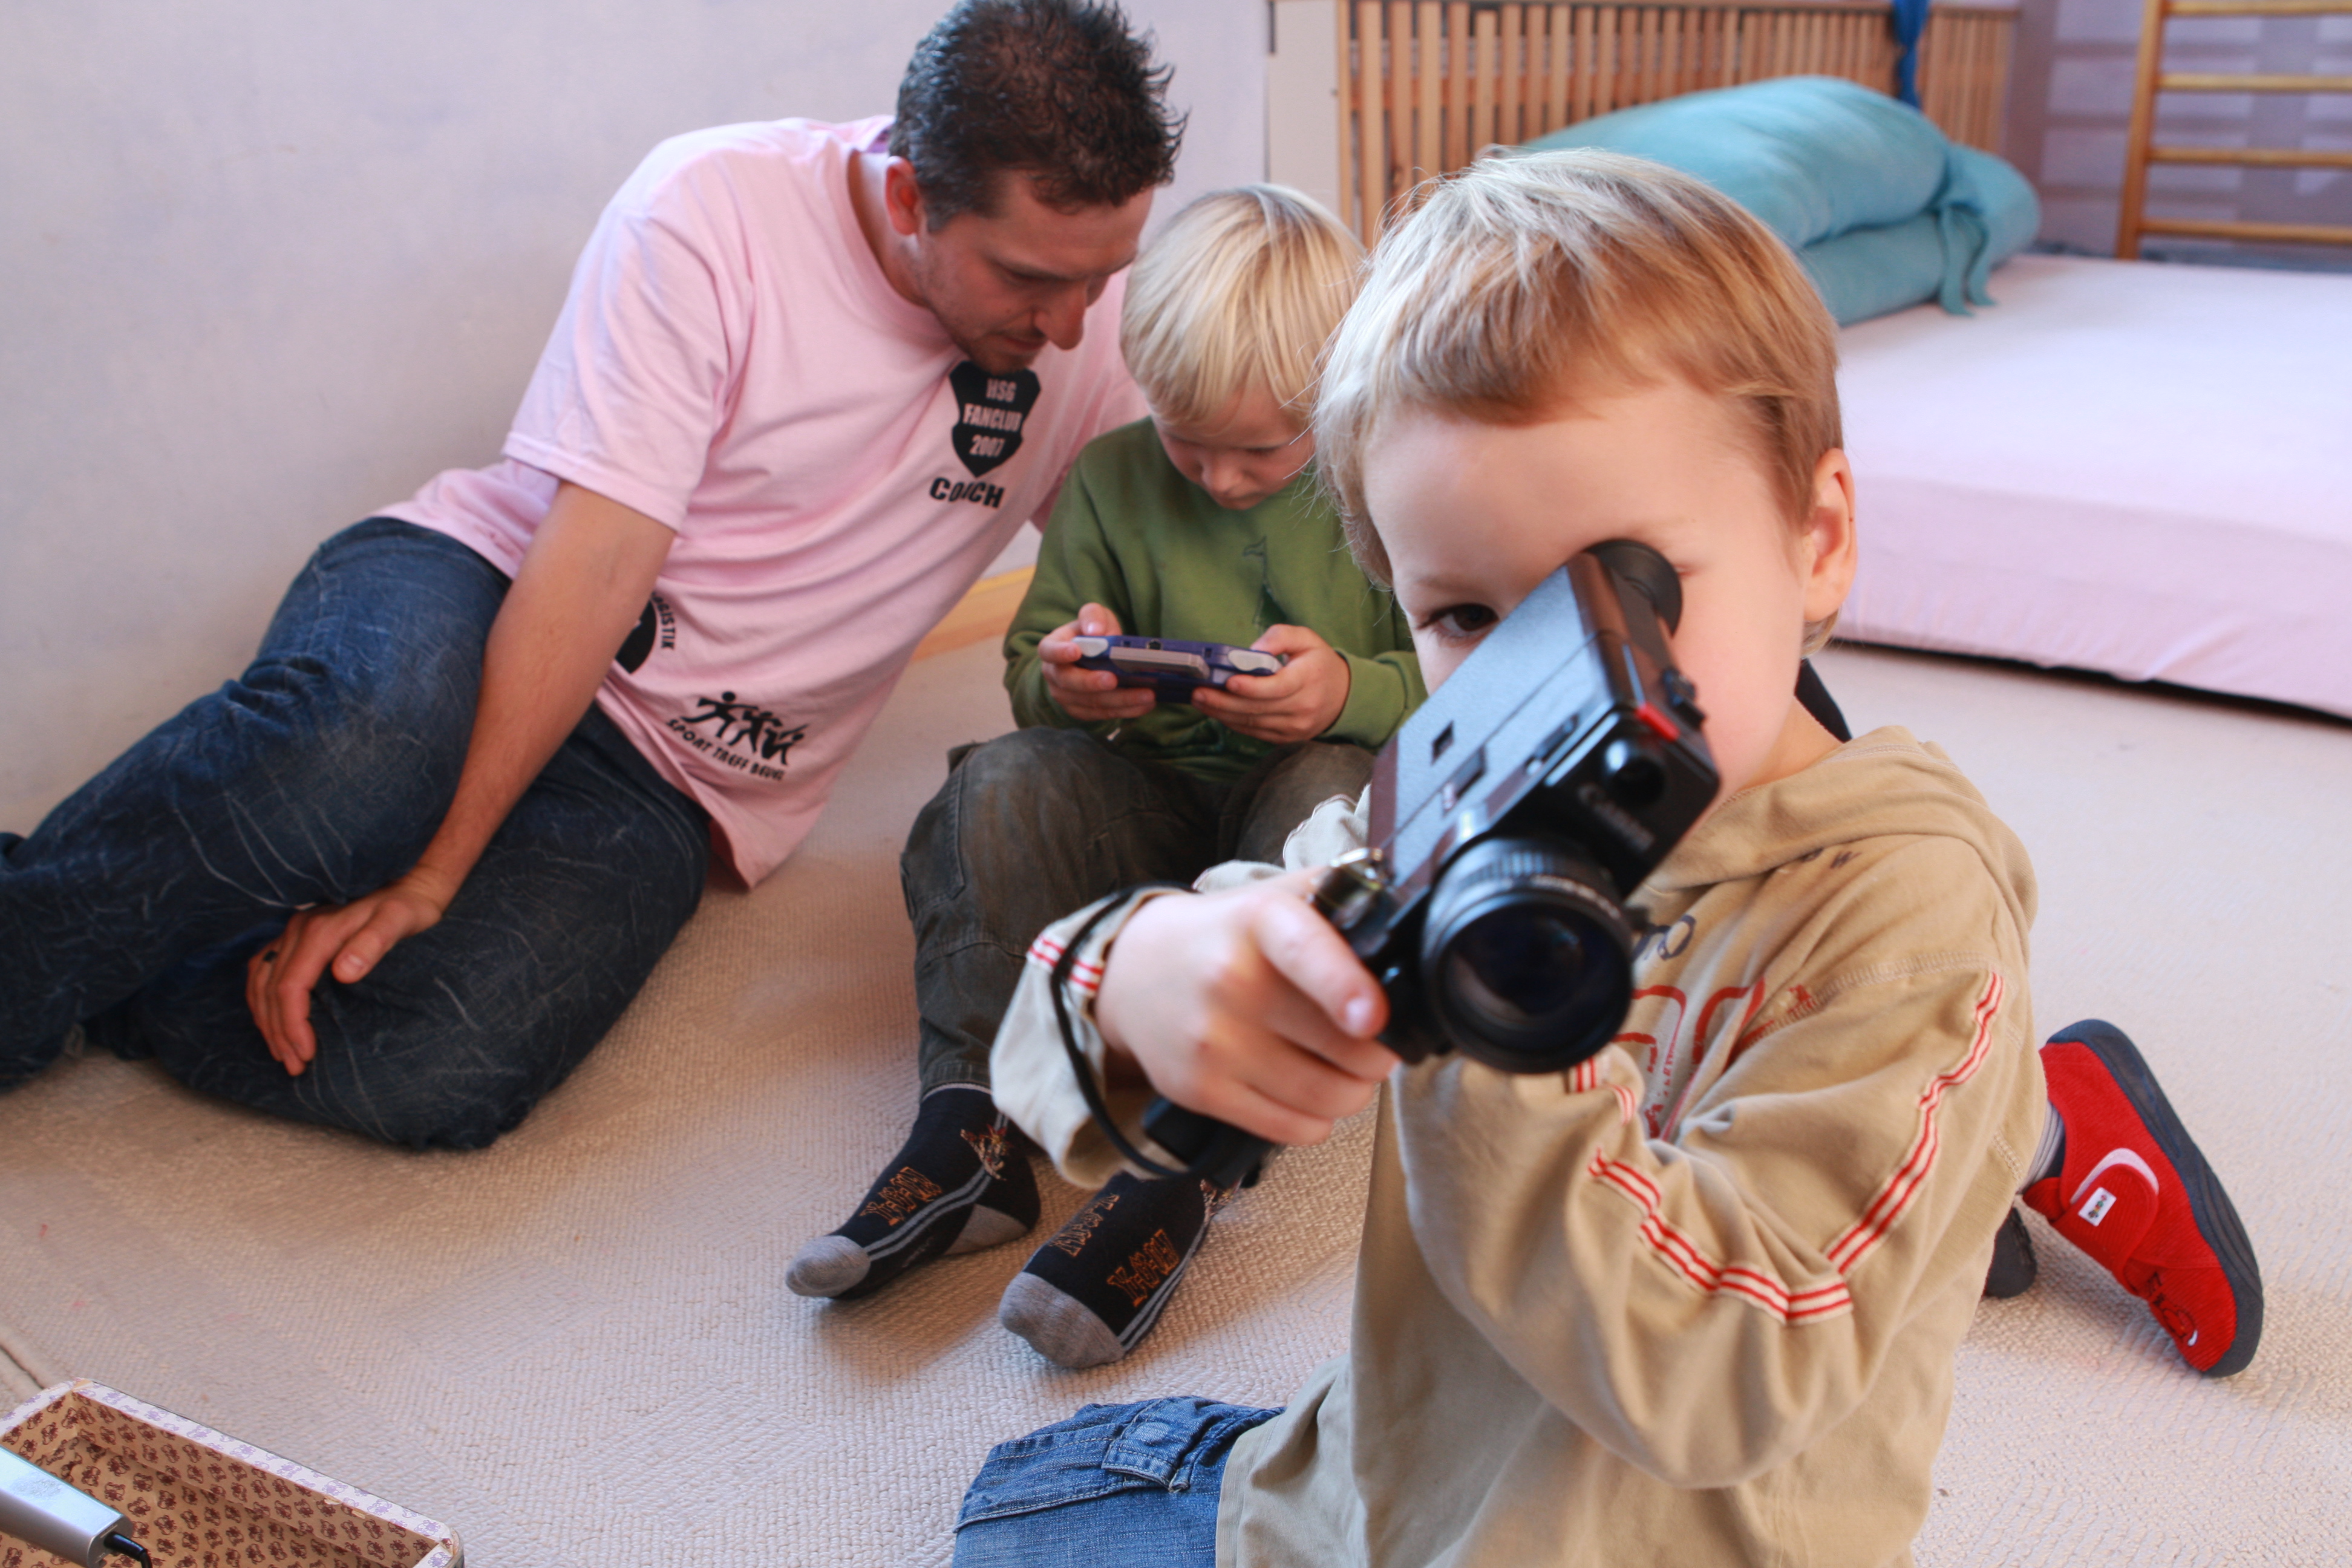 Kind mit Kamera und Telespiel und Erzieher 